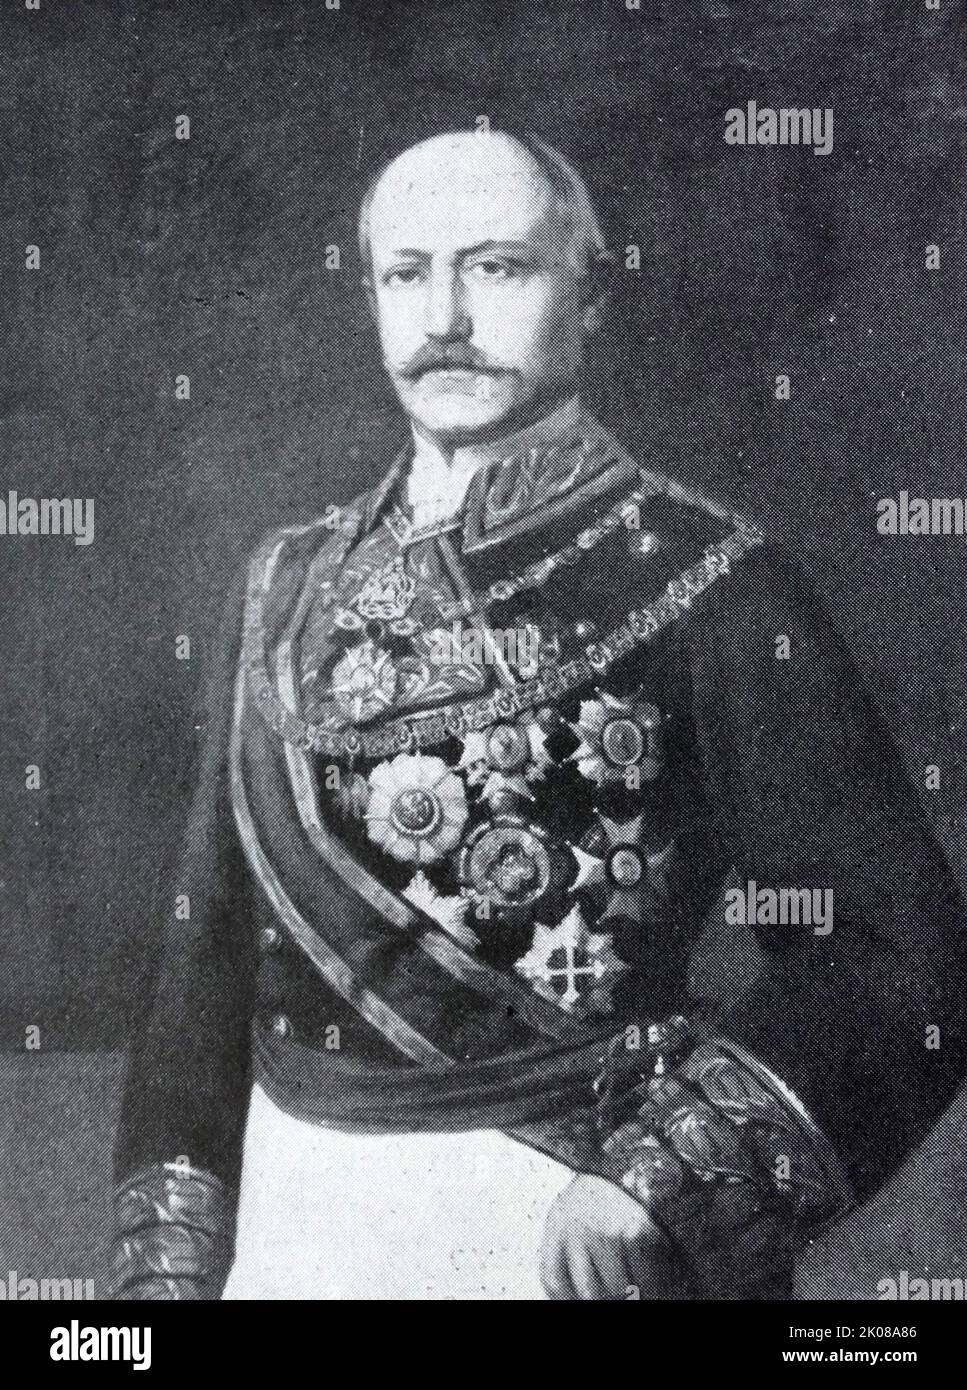 Francisco Serrano Dominguez Cuenca y Perez de Vargas, 1st duc de la Torre, grand d'Espagne, comte de San Antonio (17 décembre 1810 - 25 novembre 1885) était un maréchal et homme d'État espagnol. Il a été Premier ministre de l'Espagne en 1868-69 et régent en 1869-70 Banque D'Images